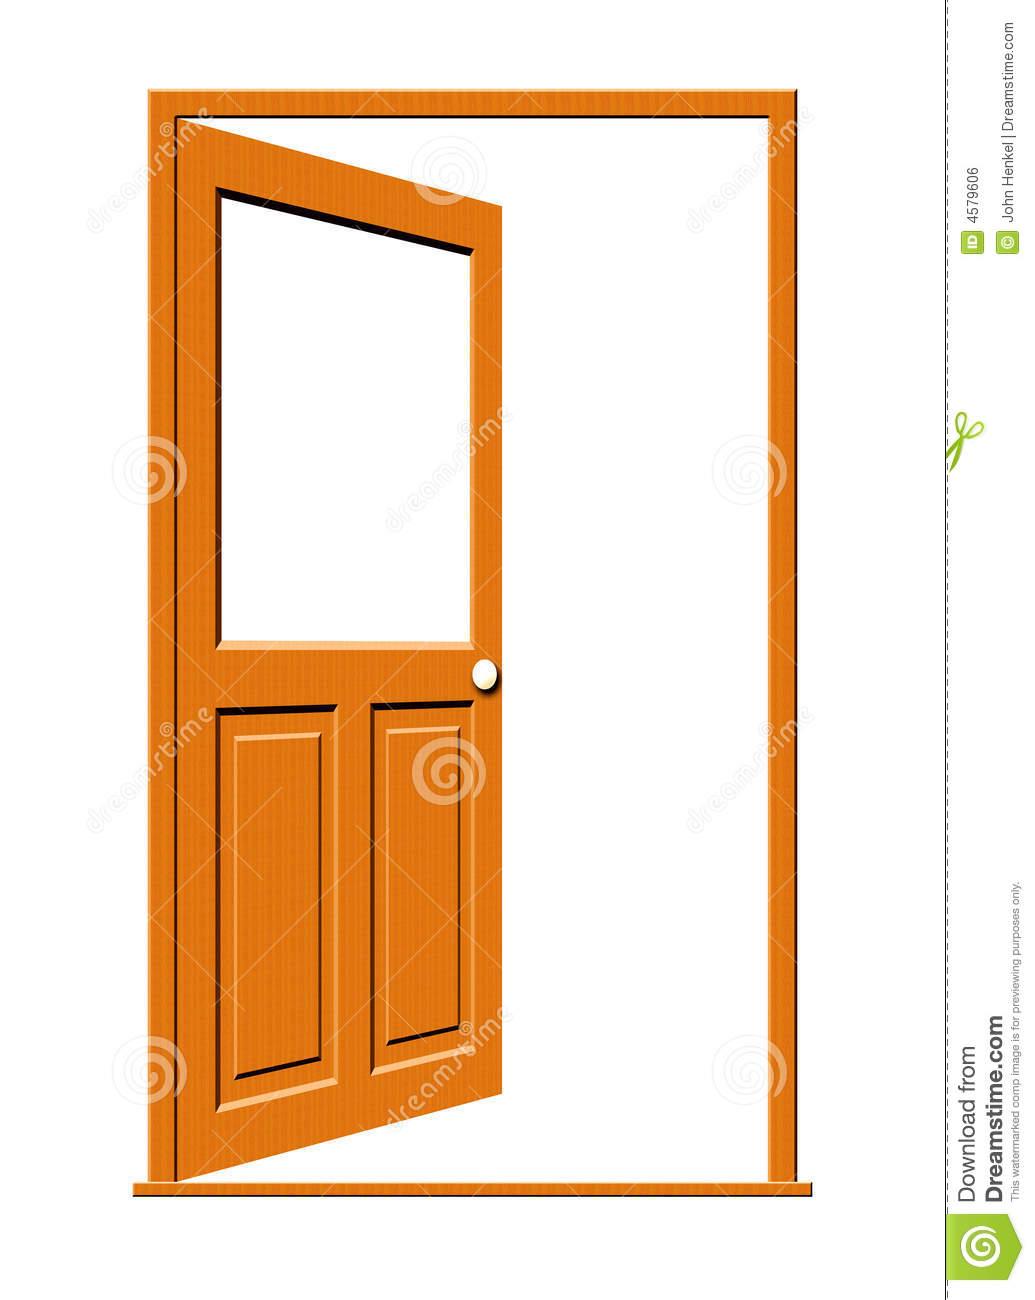 Open Door Clipart Open Wood Door Blank Window 4579606 Jpg